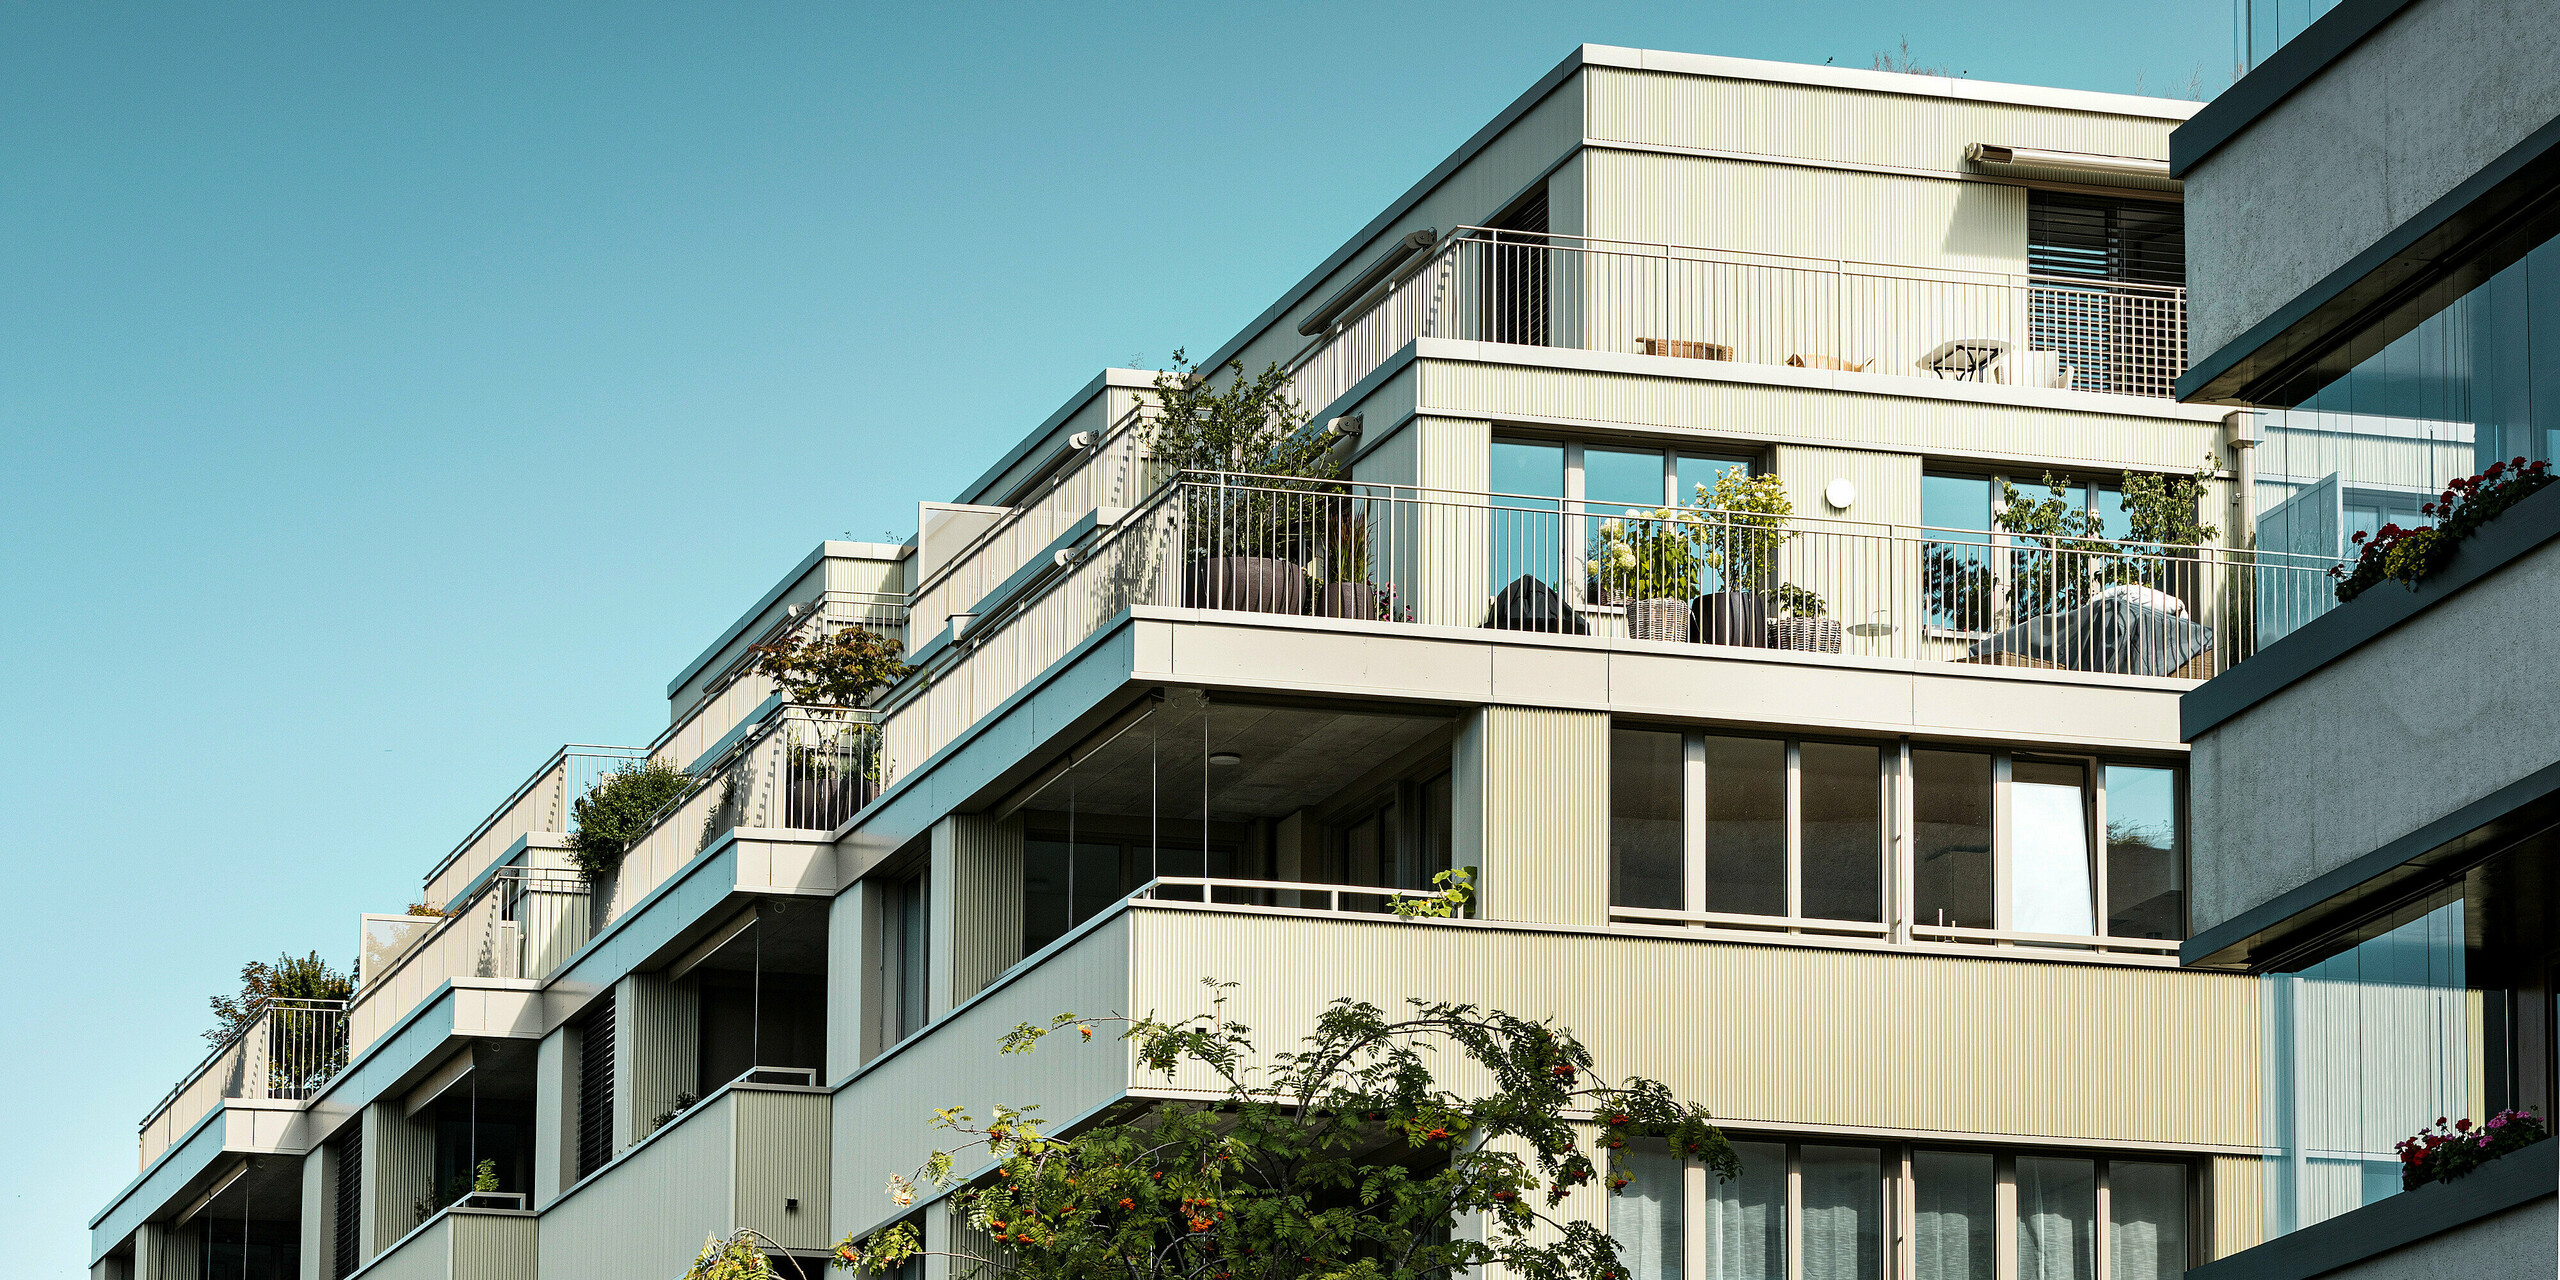 Le bâtiment résidentiel moderne "Stetterhaus" à Altstetten, Zurich, est entouré d'une façade unique - le profil dentelé PREFA dans la couleur métallique perle spéciale.